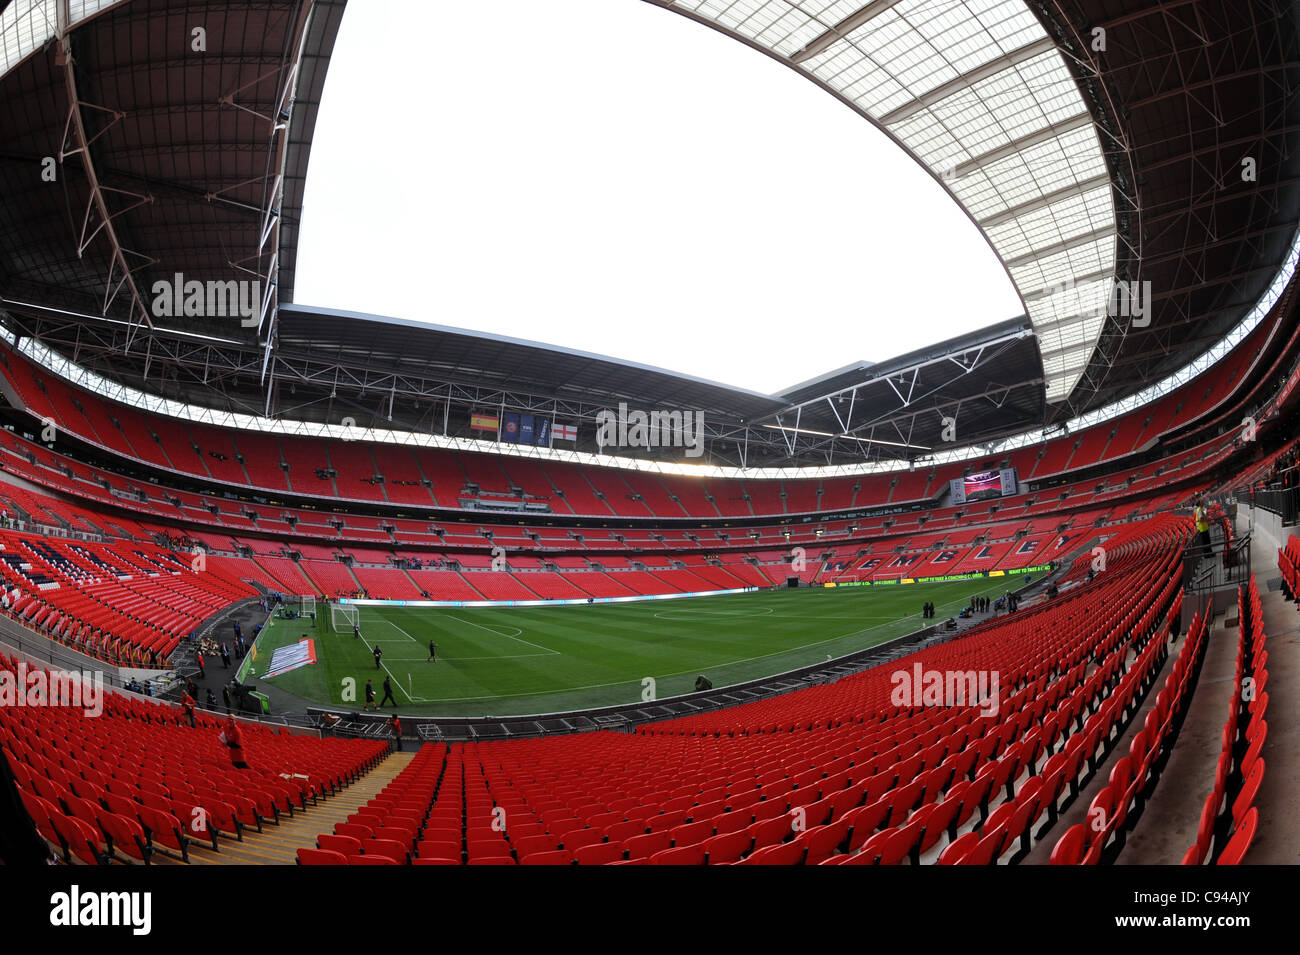 Blick ins Innere Wembley Stadium, London, England. Das englische Nationalstadion & die Heimat der englische Fußballverband oder FA Stockfoto